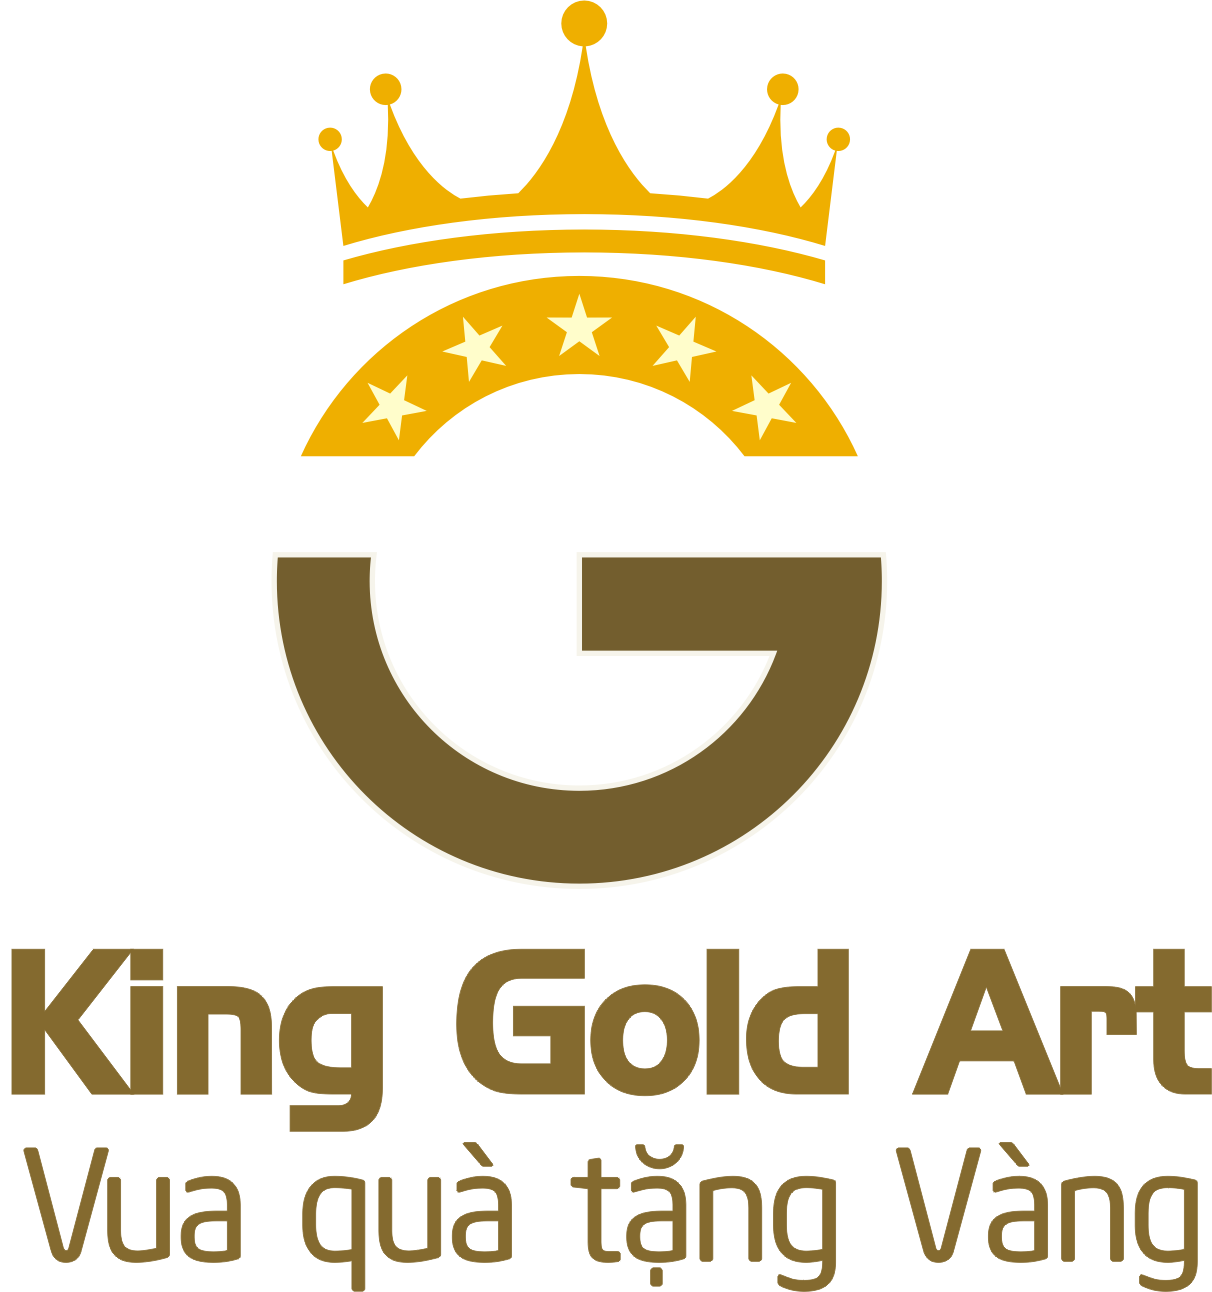 King Gold Art – Kinggold.vn Tinh hoa quà tặng vàng